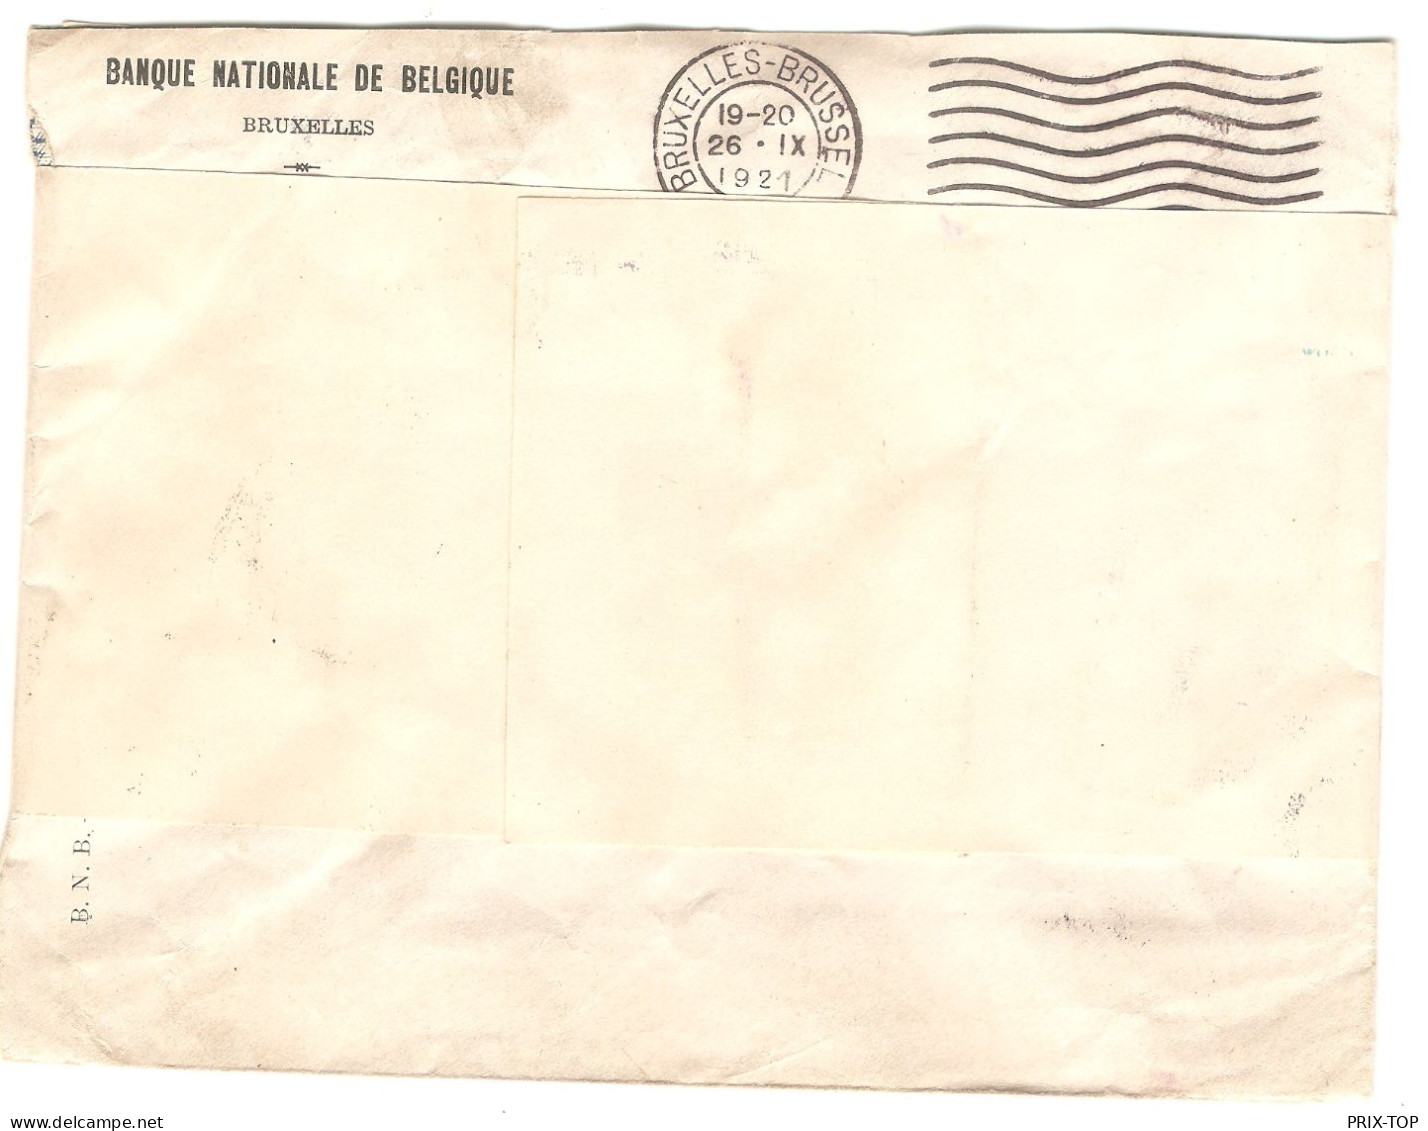 Lettre S.M.B. 4° Régiment De Carabiniers Cachet Du Régiment Signé Quartier-Maître Obl. BXL 3/10/1921 > Nederbrakel - Brieven En Documenten